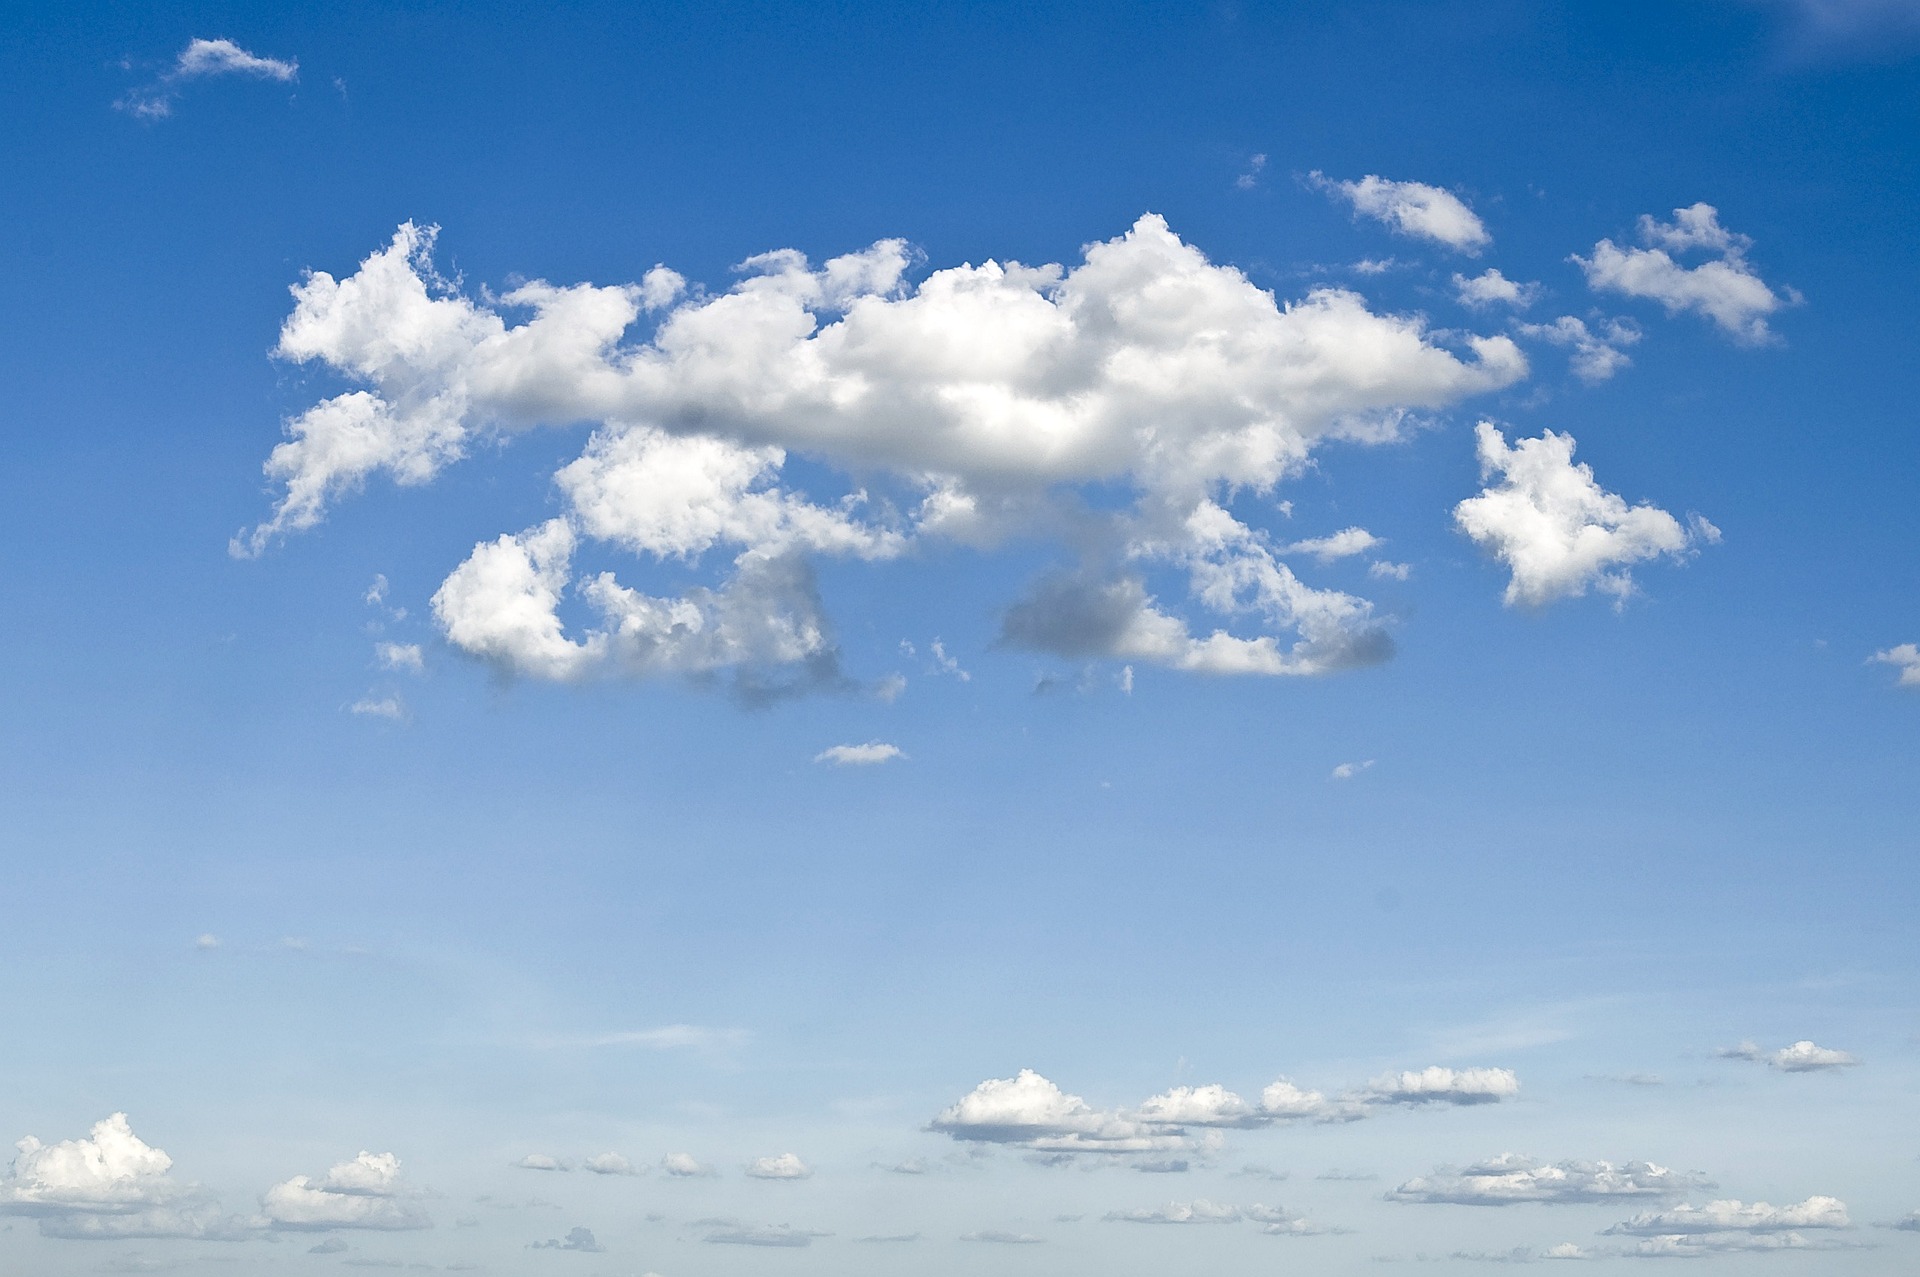 Meteo Ustica: oggi lunedì 28 Agosto poco nuvoloso per velature, previste forti raffiche di vento.